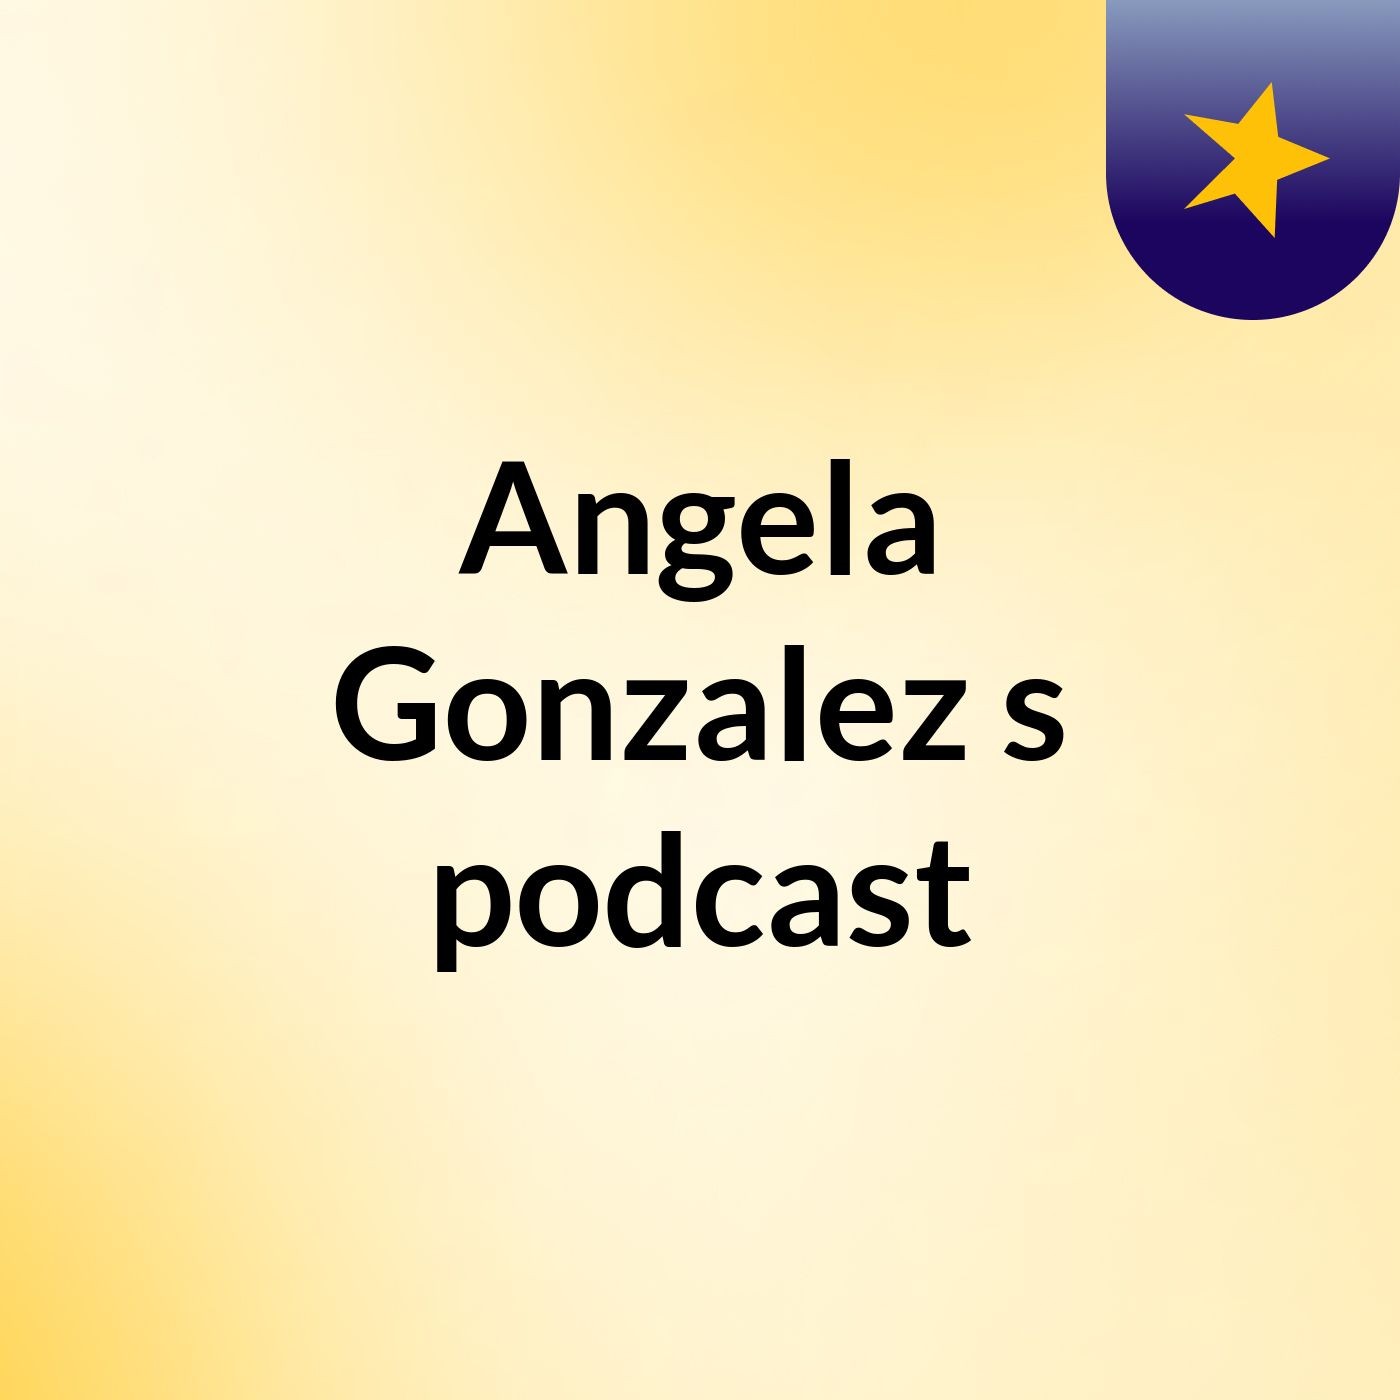 Angela Gonzalez's podcast